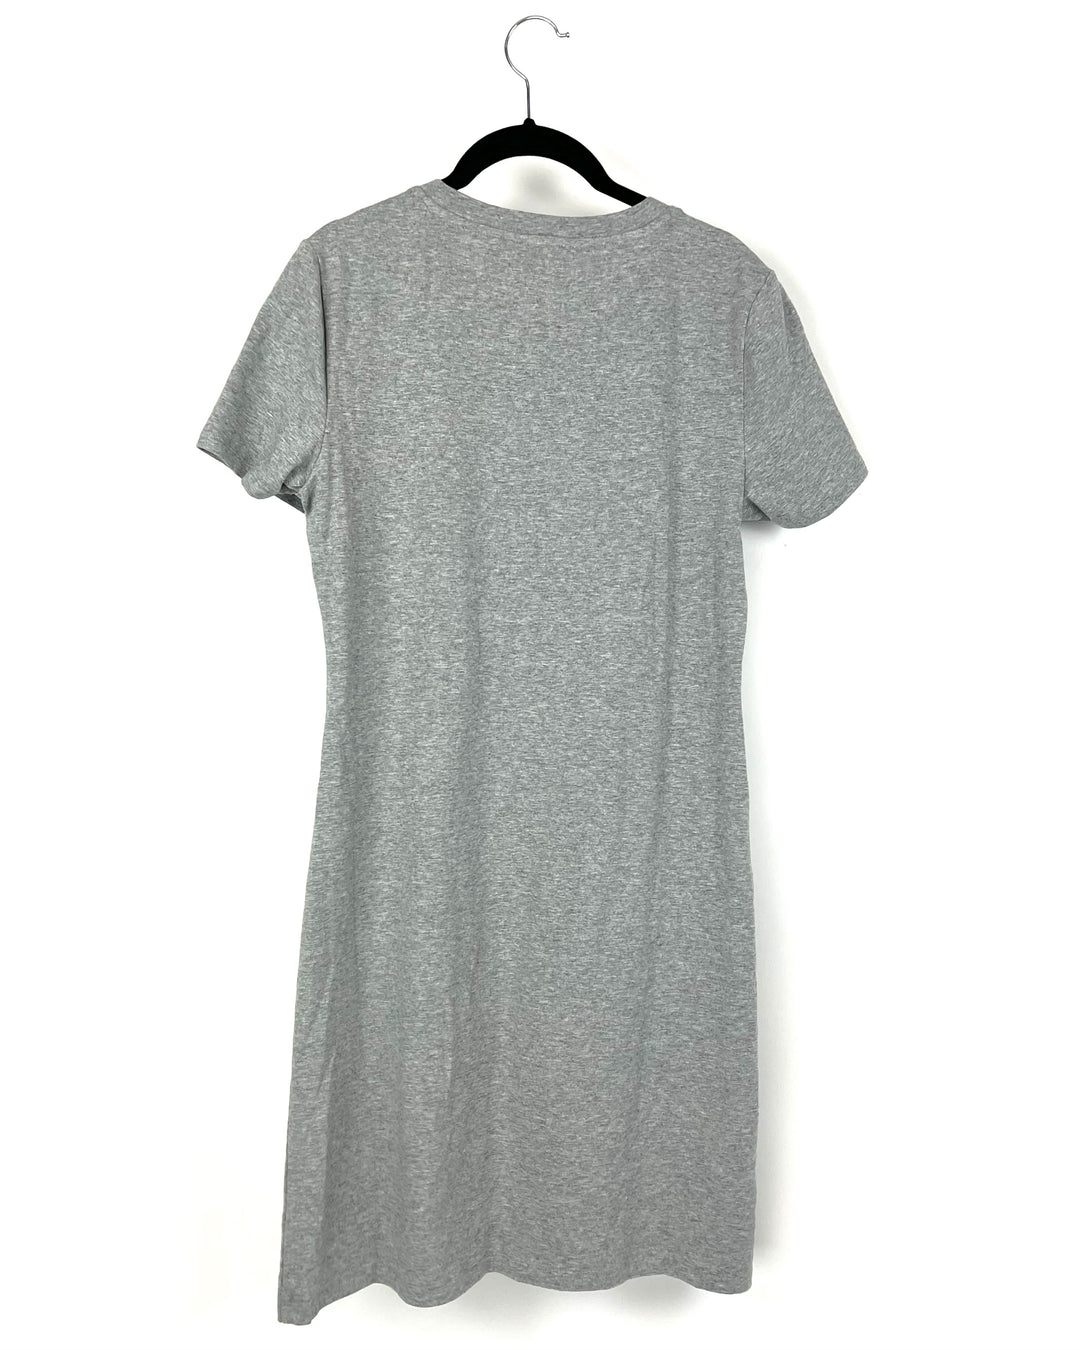 Short Sleeve T-Shirt Dress - Small